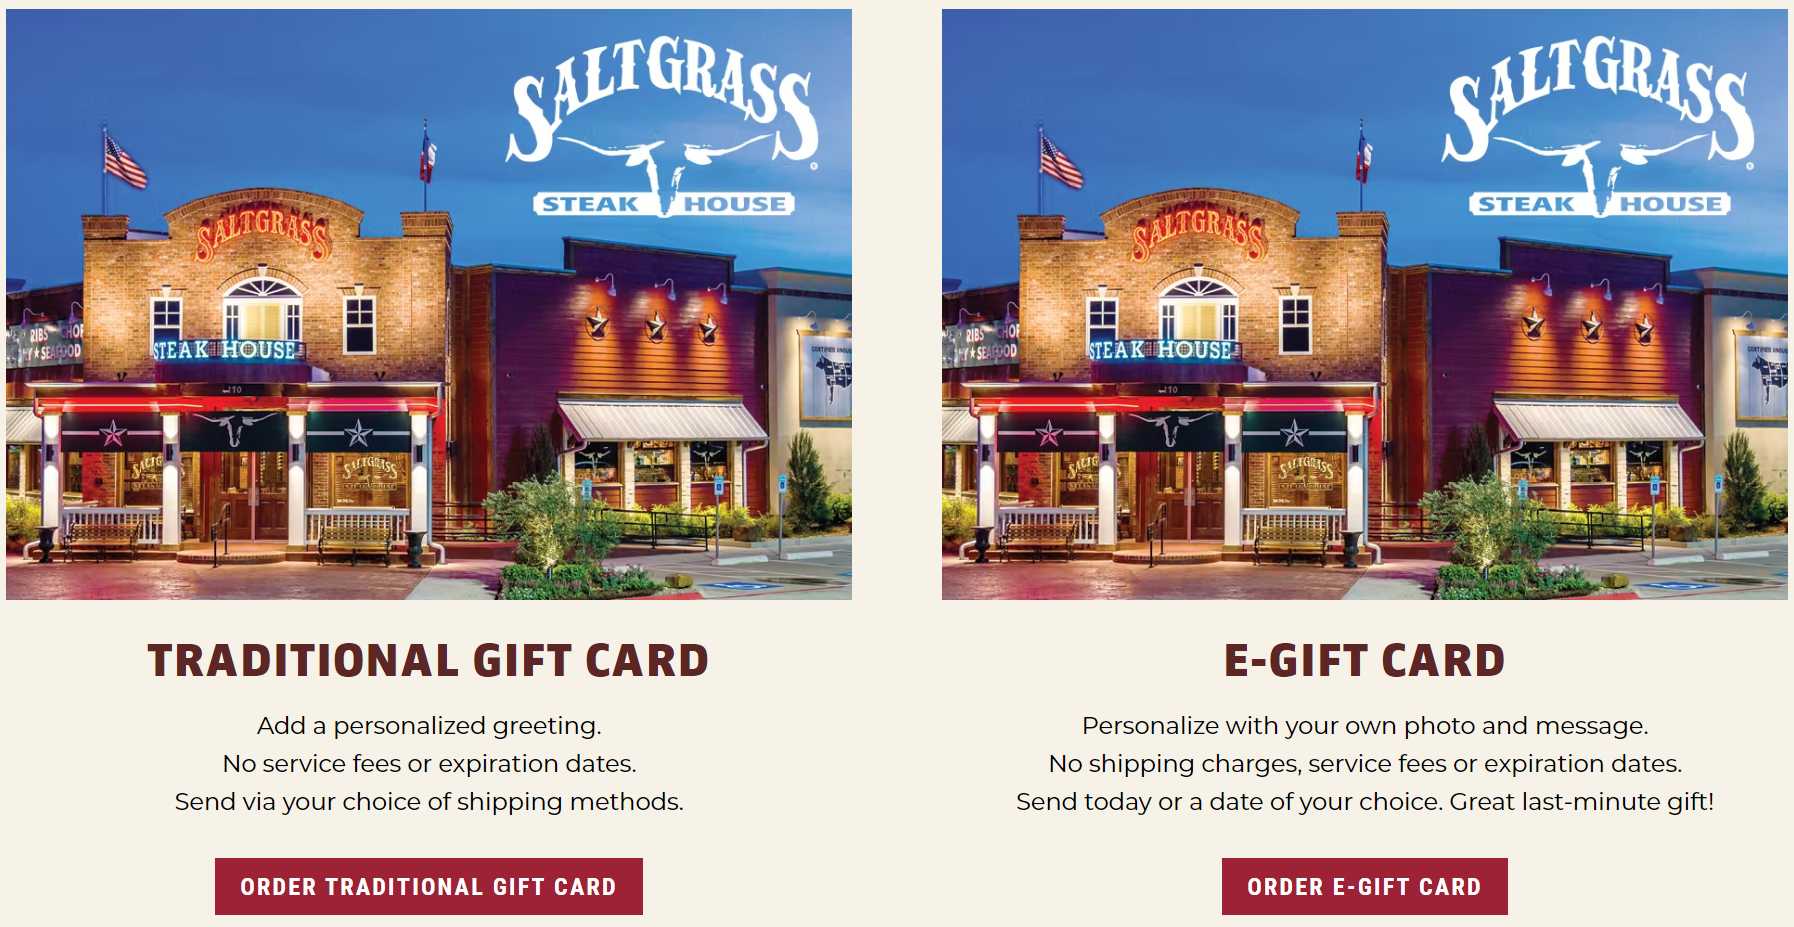 Check-Your-Saltgrass-Gift-Card-Balance